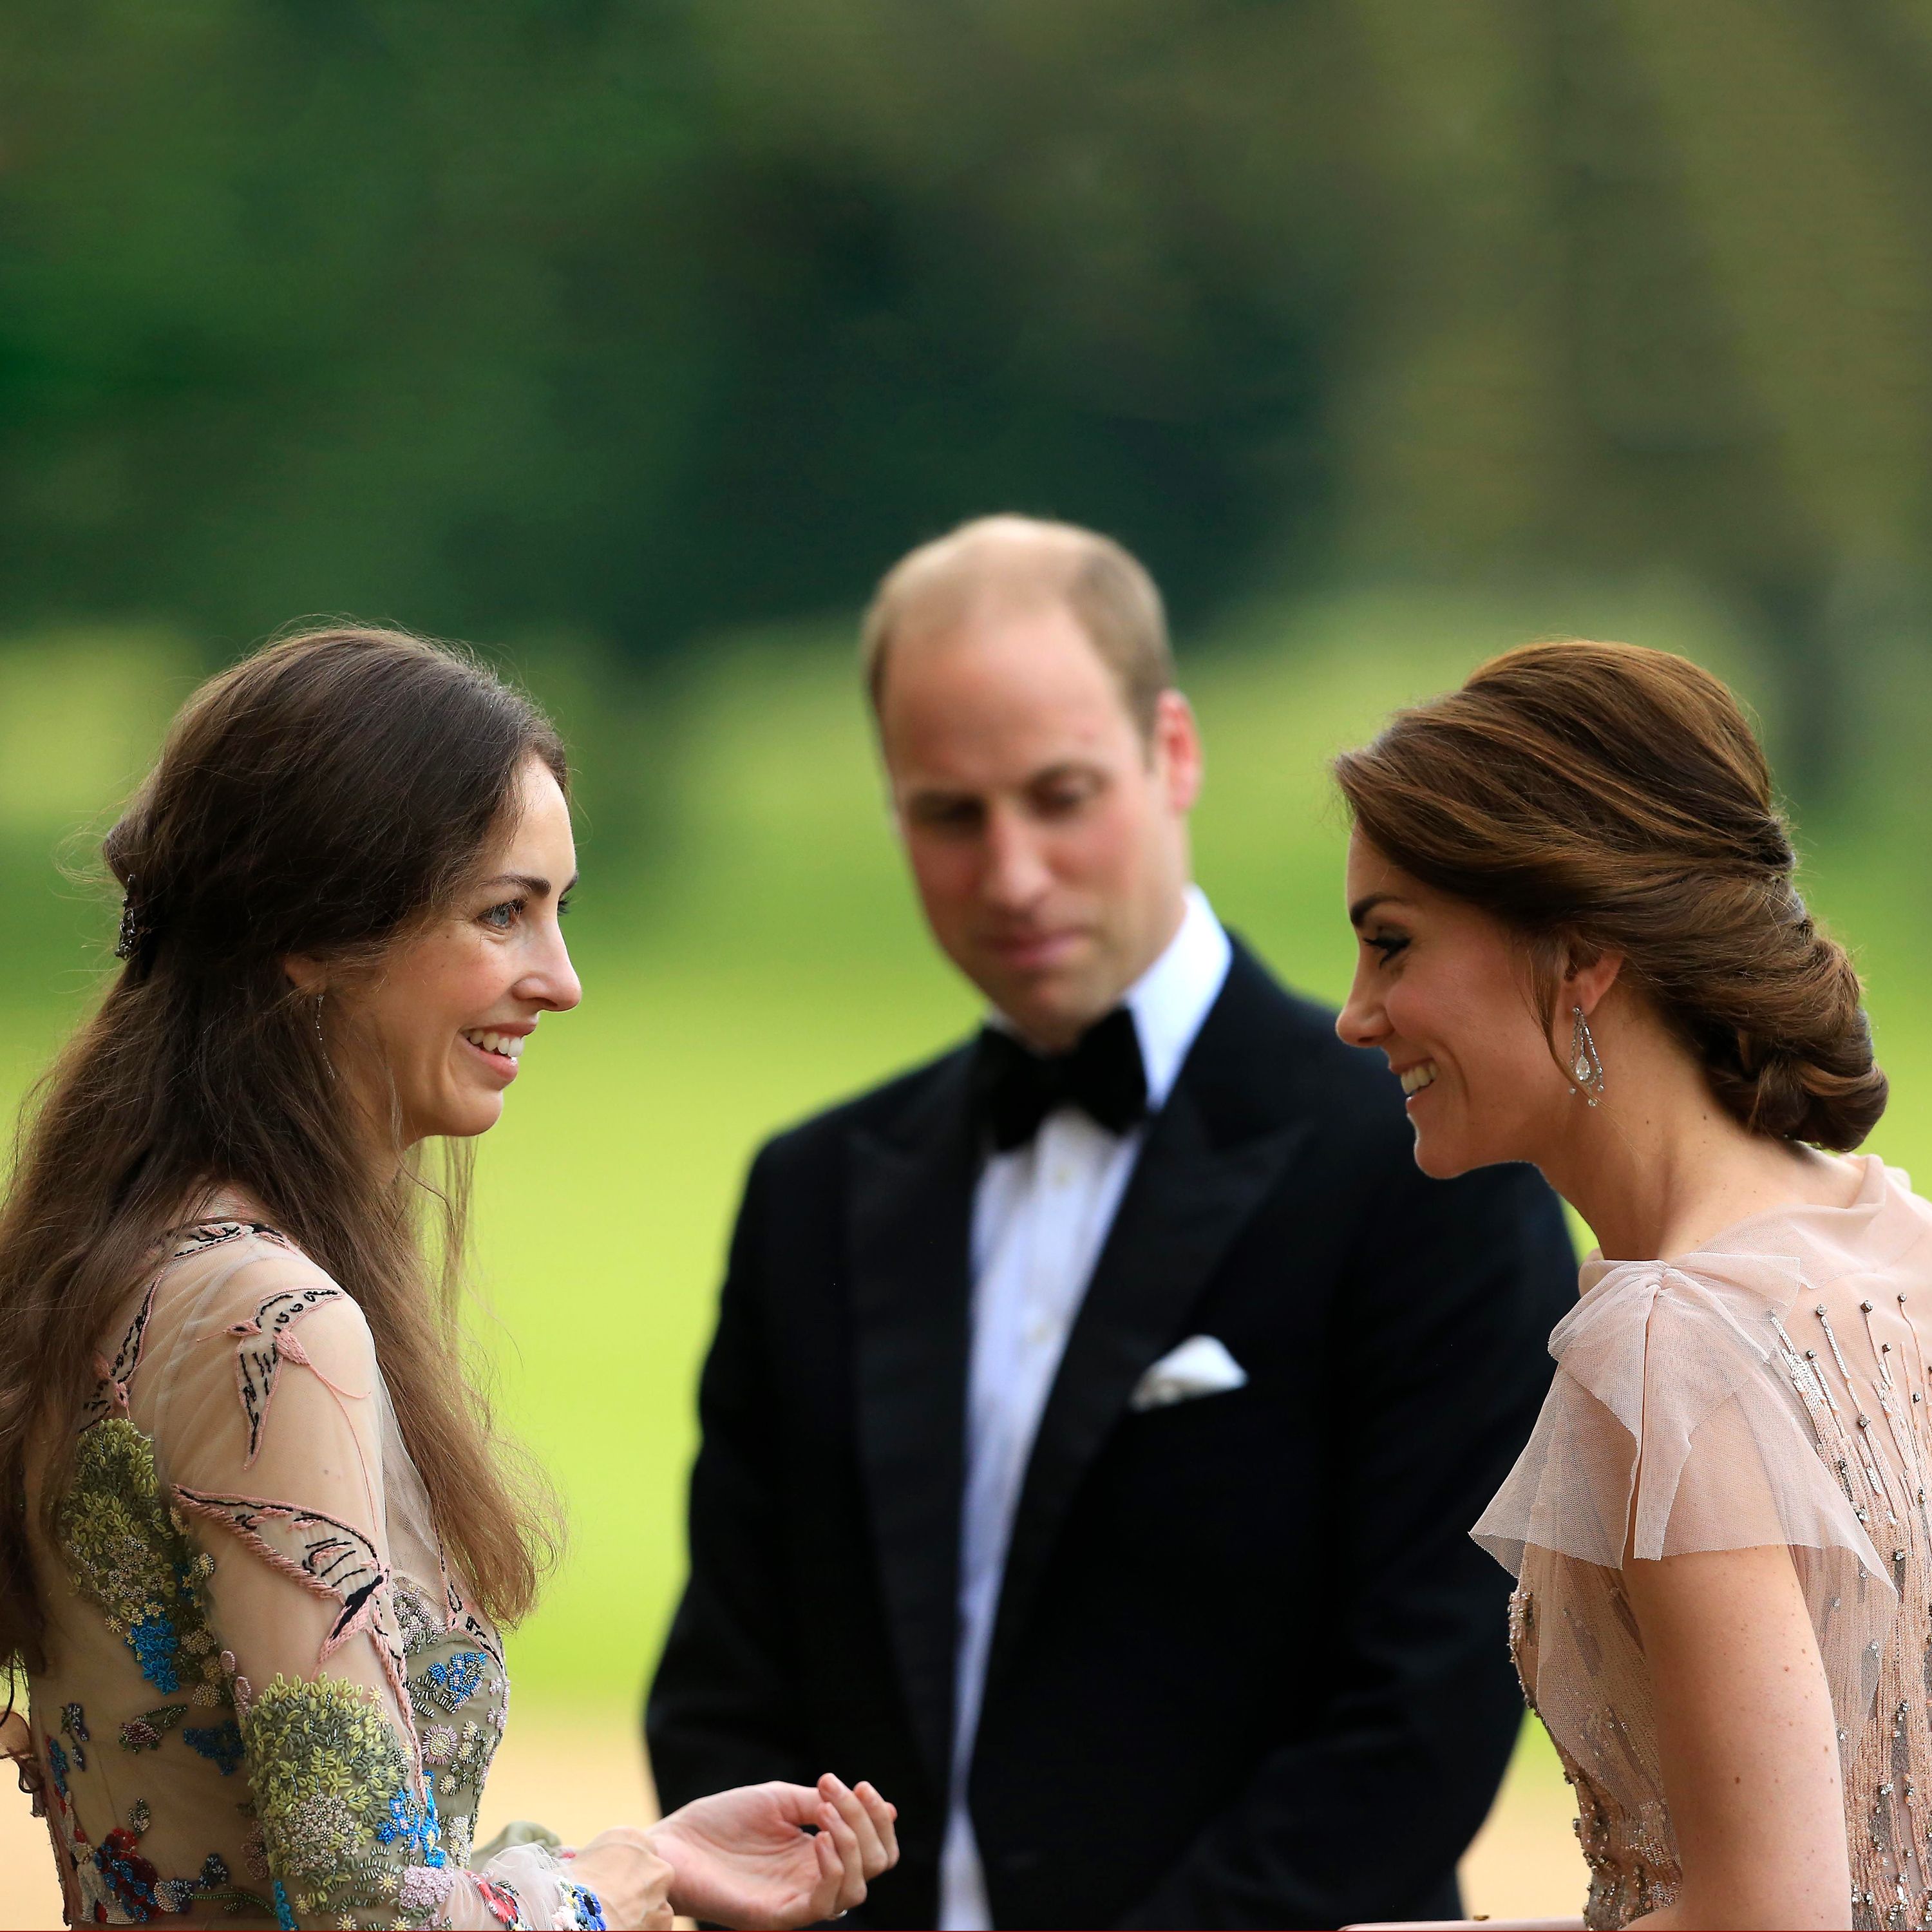 of a Feud Between Kate Middleton & Rose Cholmondeley